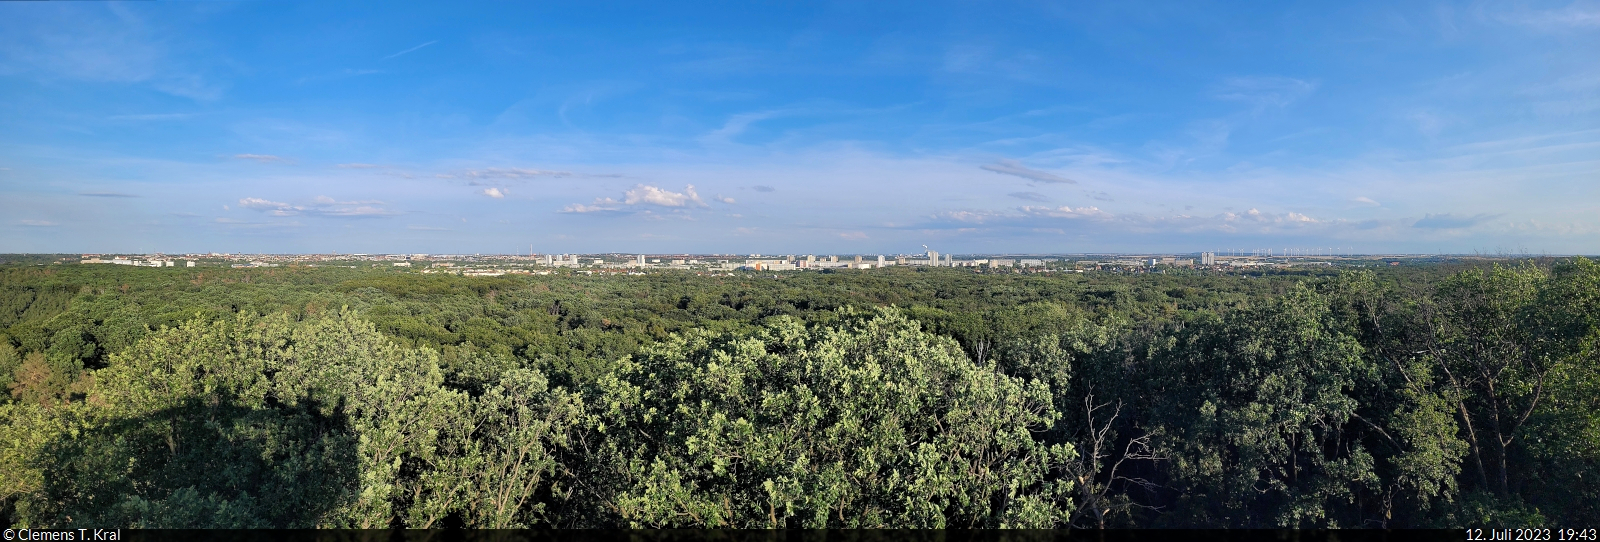 Wie grün die Stadt Halle (Saale) sein kann, das beweist diese Panorama-Aufnahme vom Kolkturm in der Dölauer Heide.

🕓 12.7.2023 | 19:43 Uhr